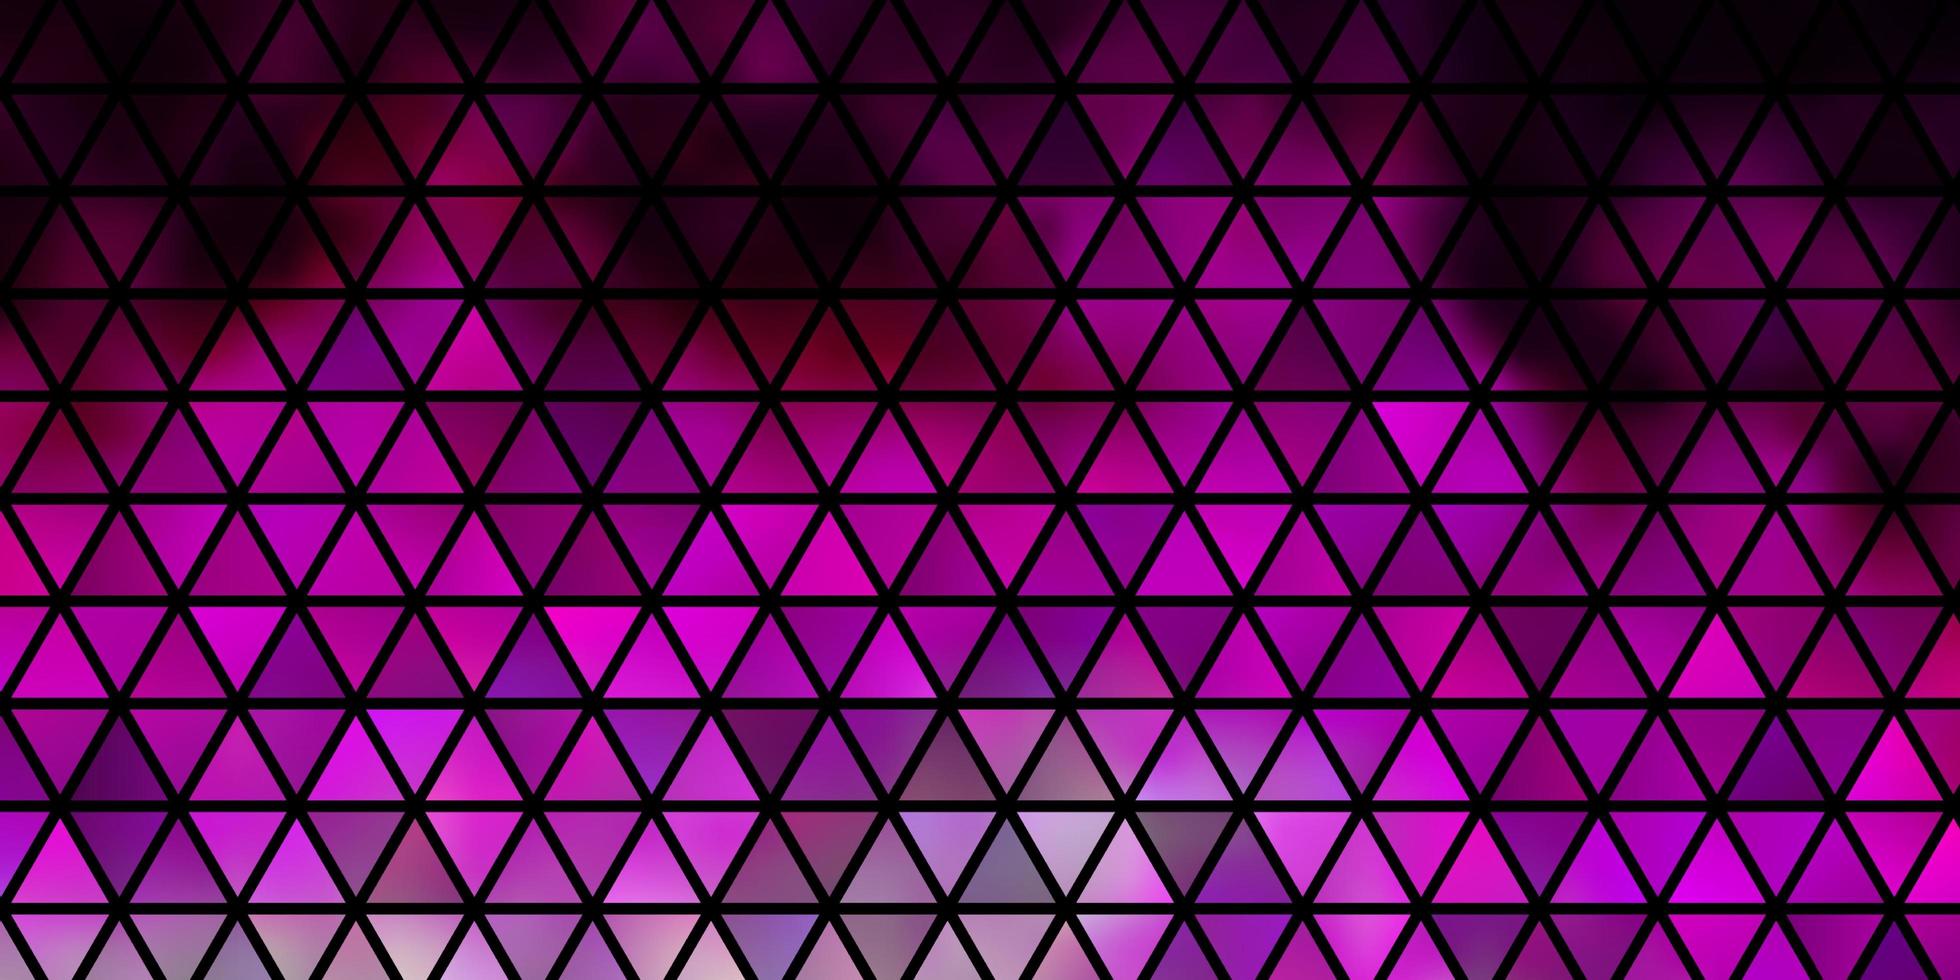 sfondo vettoriale rosa chiaro con triangoli